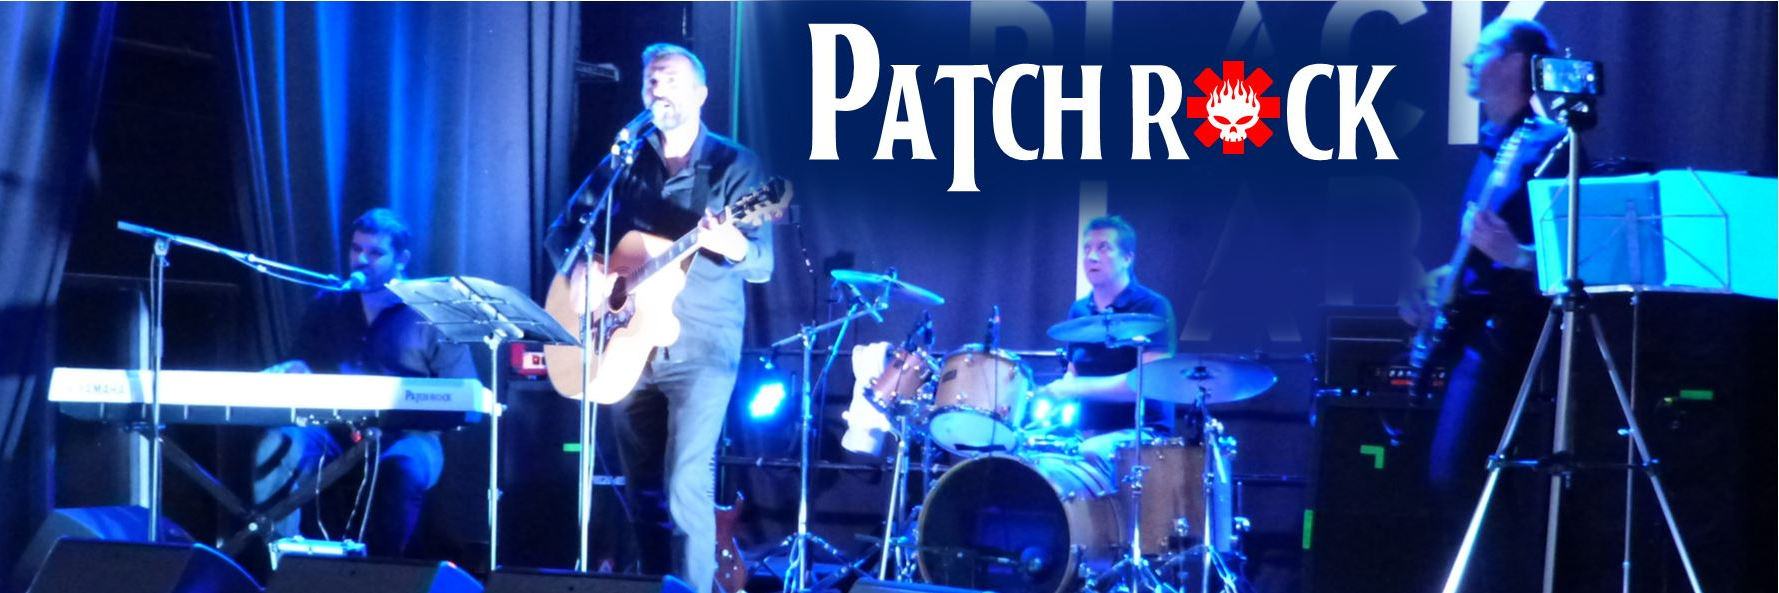 Patchrock LiveMusic, musicien Rock en représentation à Nord - photo de couverture n° 1